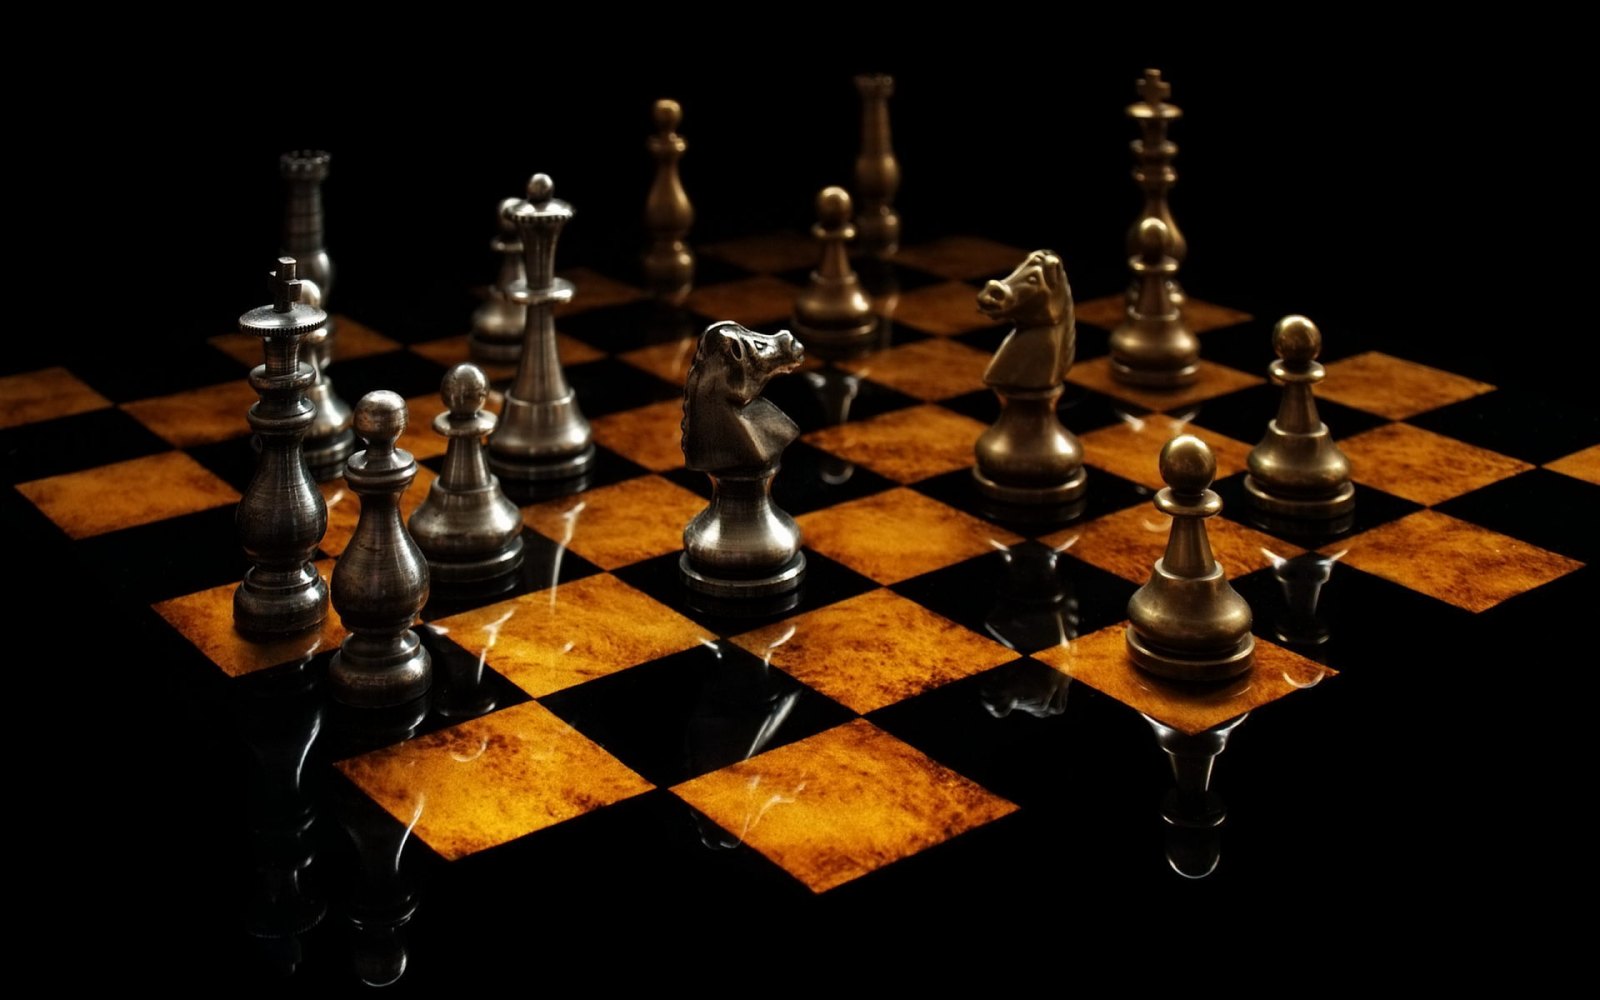 Jair Bolsonaro jogando xadrez 4D com o Congresso : r/brasilivre